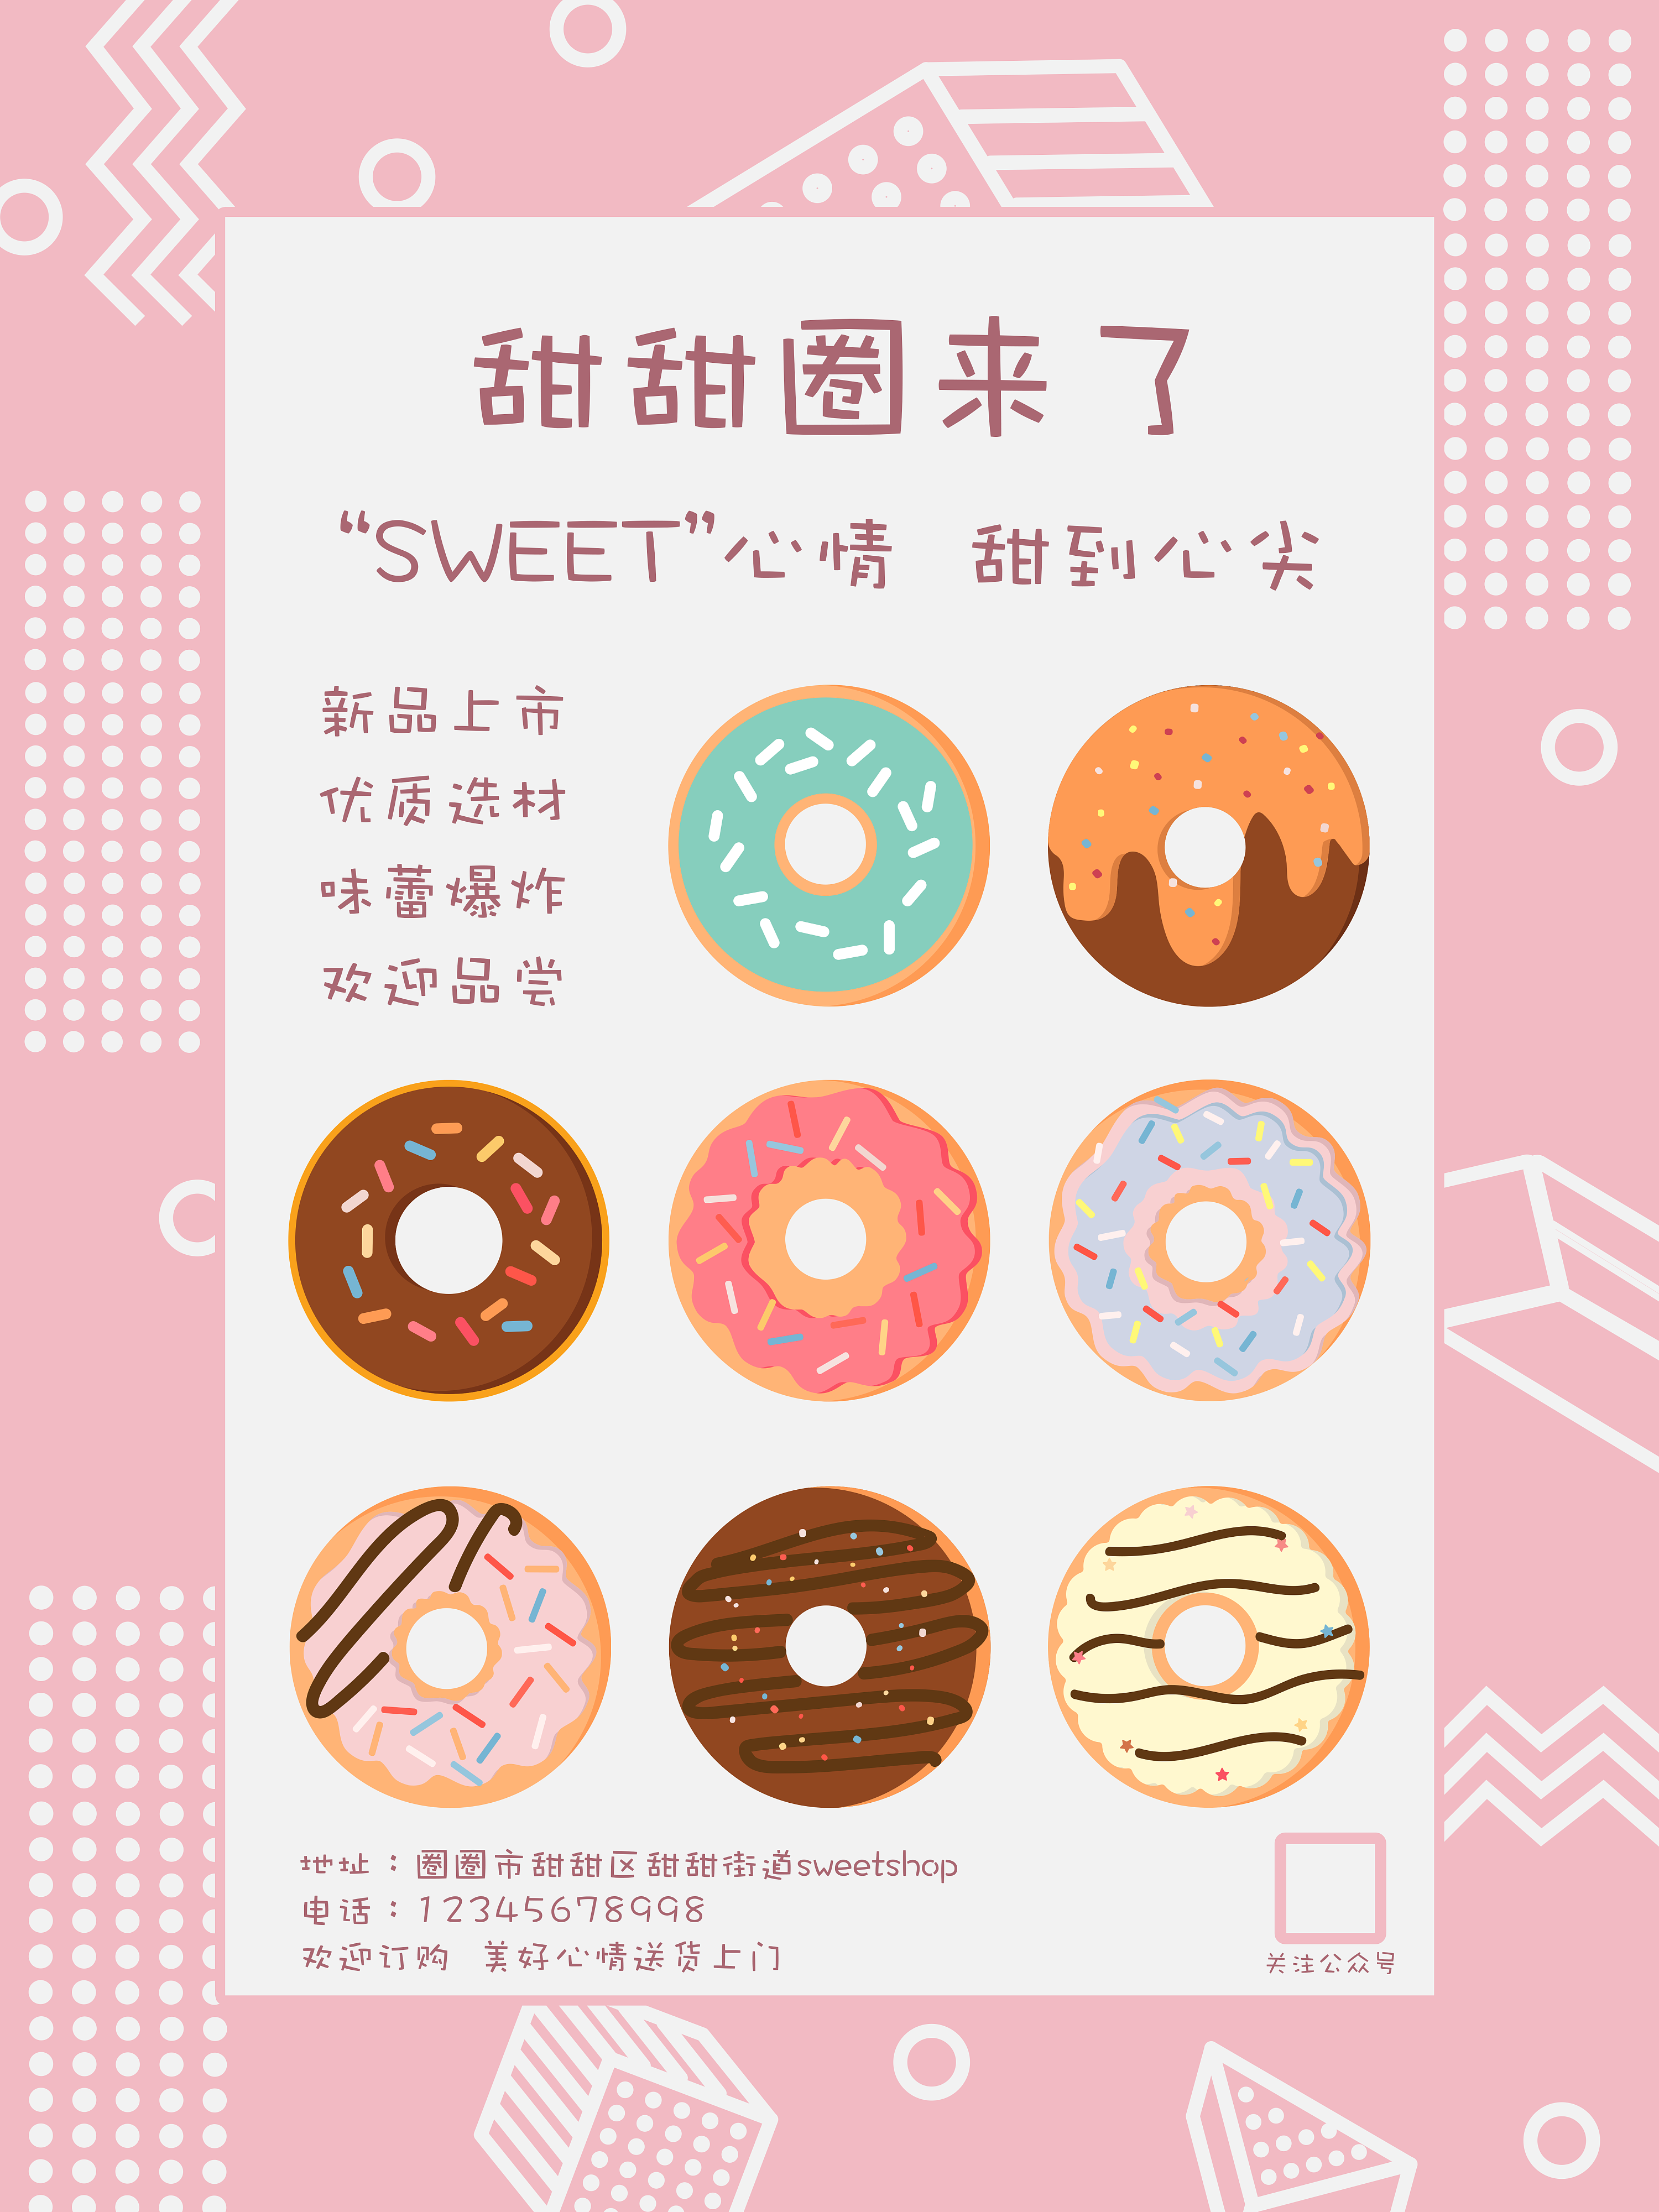 创意3D文字Sweet甜蜜主题海报Banner设计素材 – 设计小咖